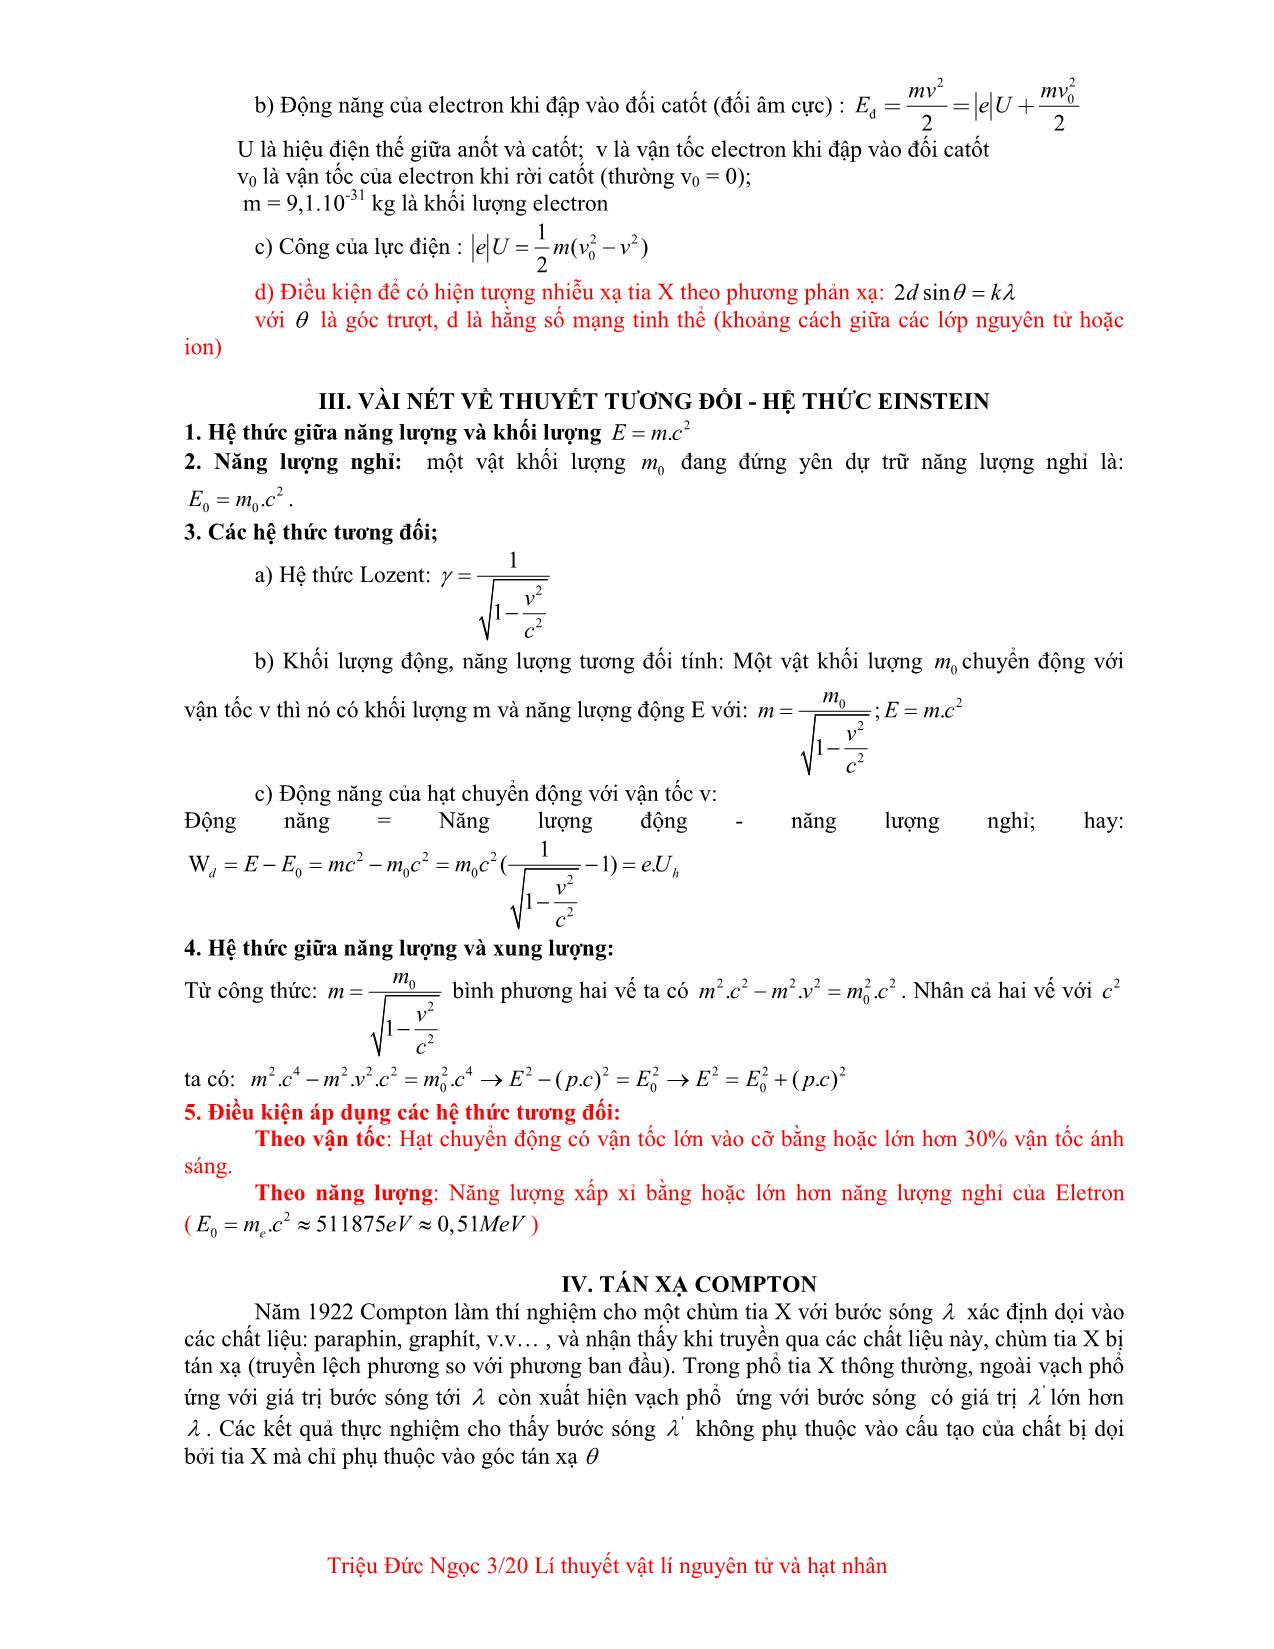 Giáo trình Lý thuyết vật lí nguyên tử và hạt nhân trang 3